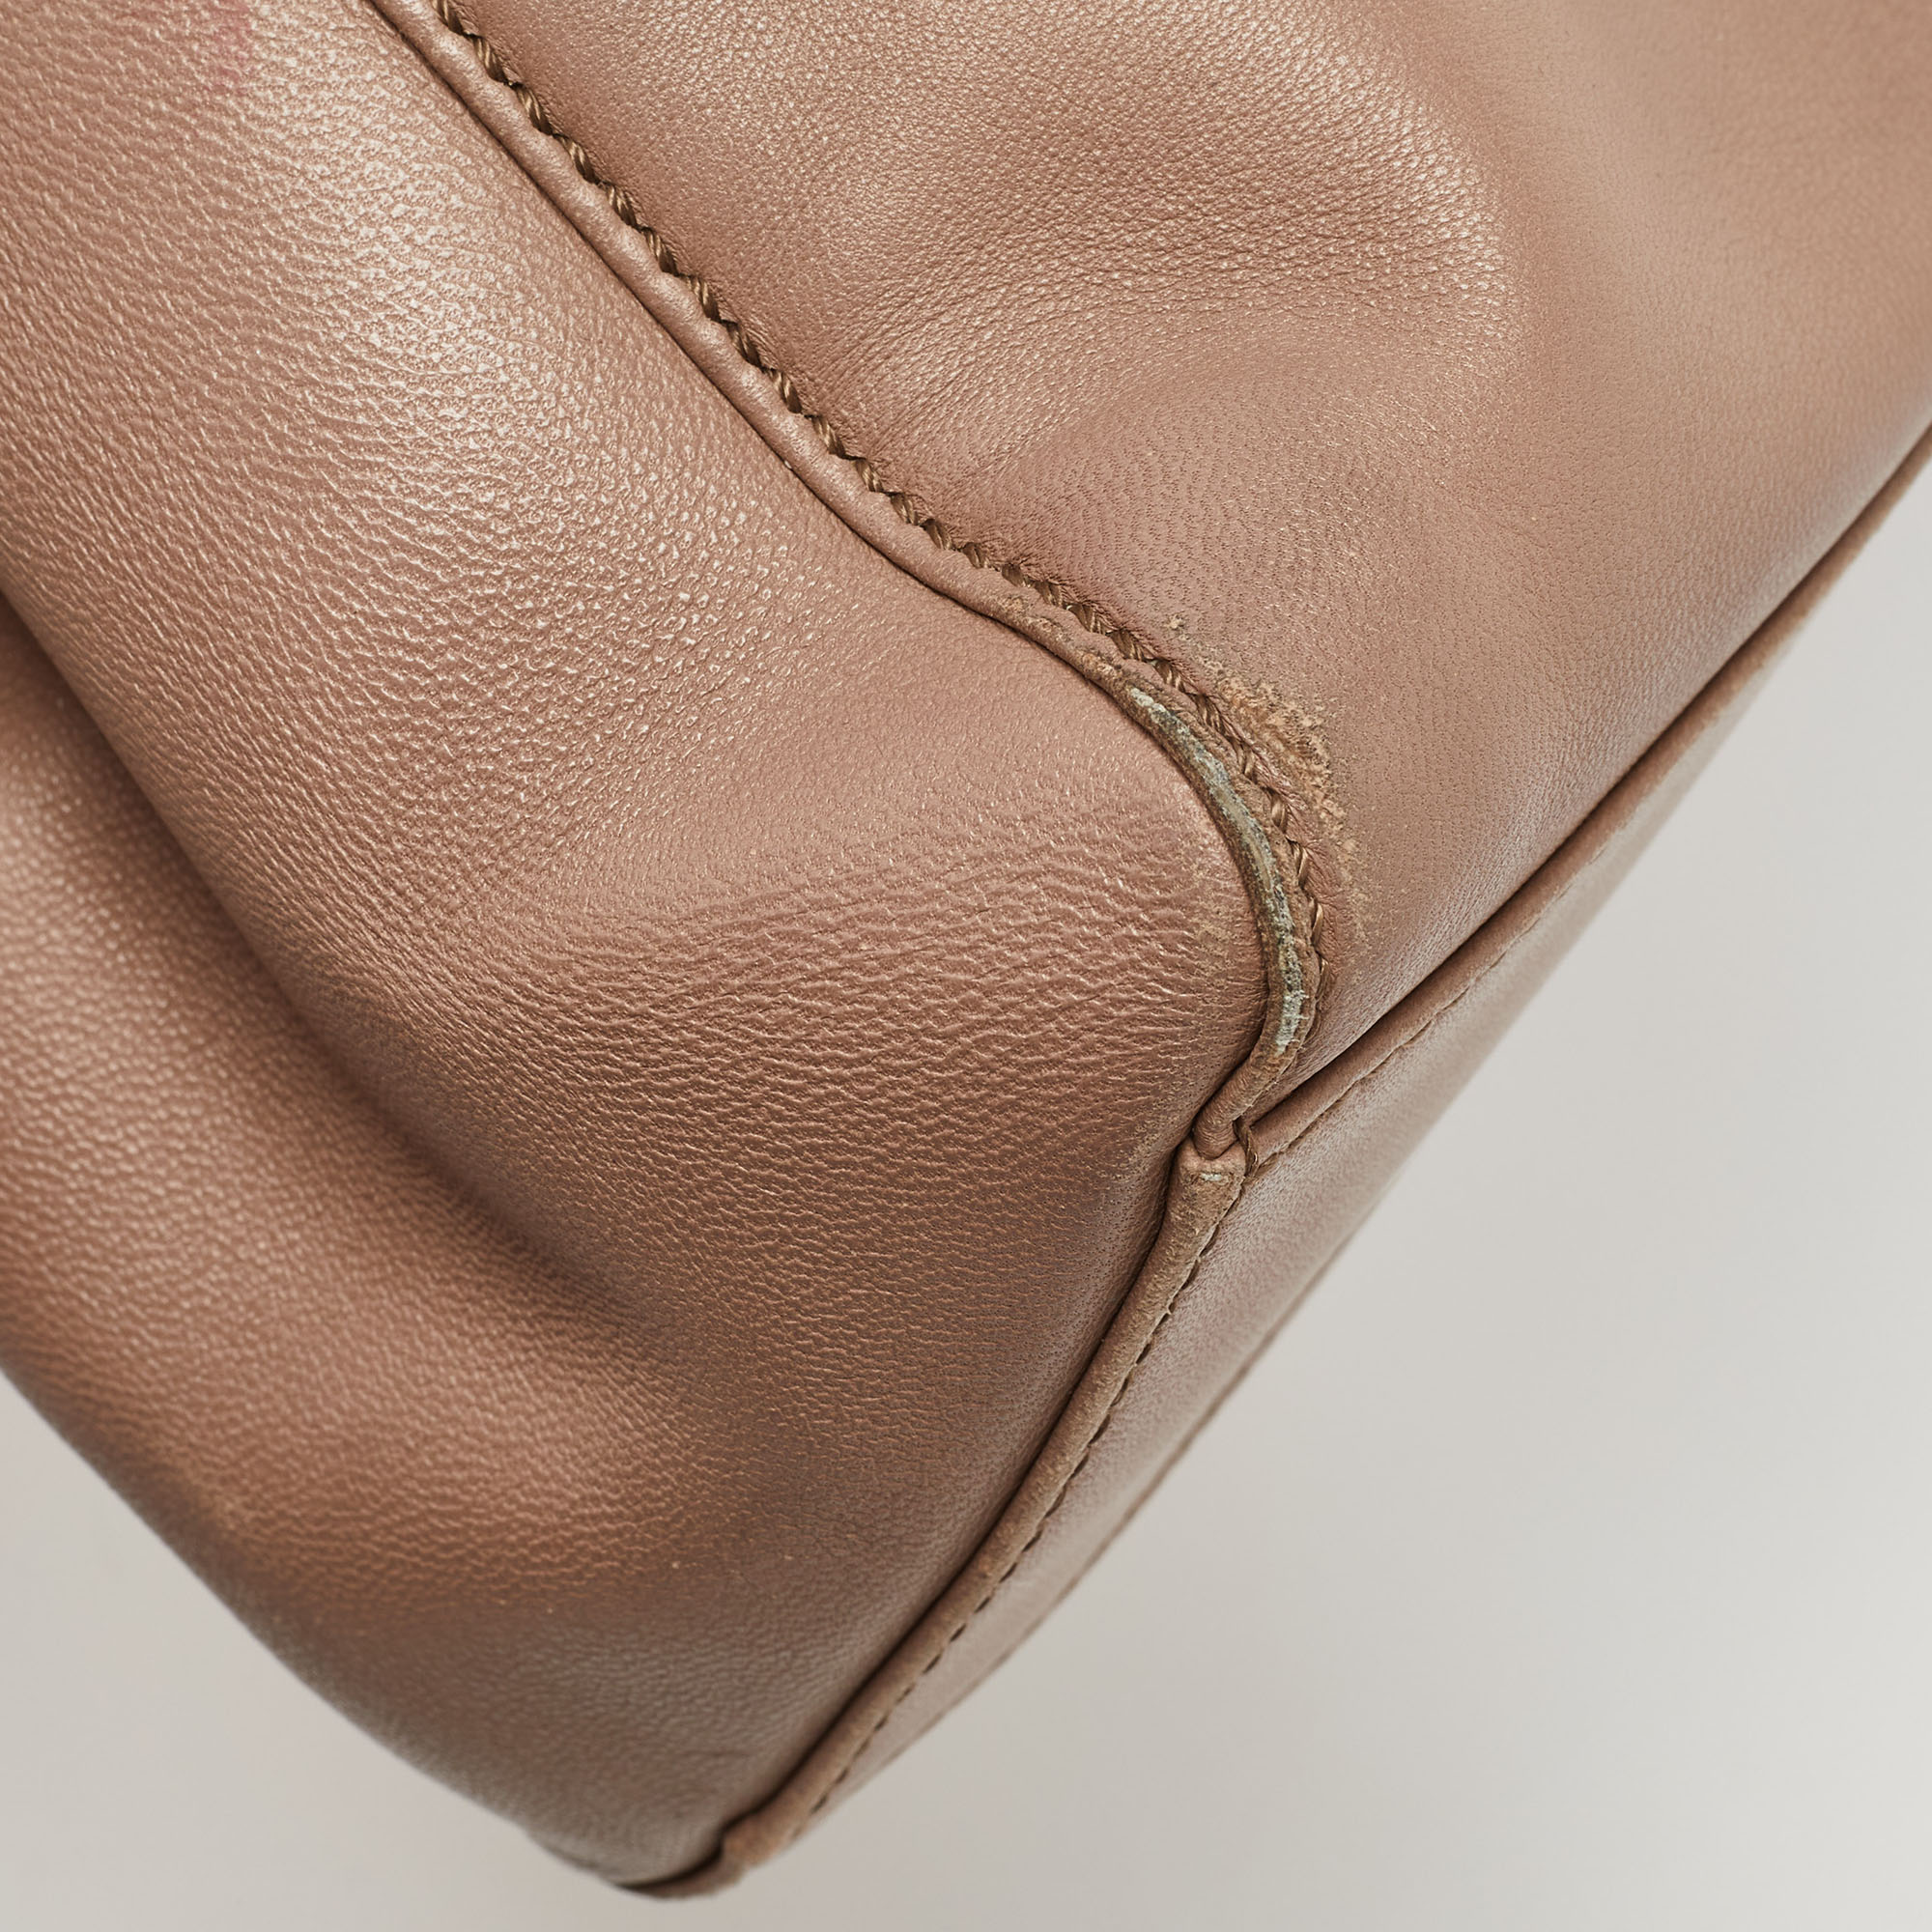 Fendi Beige Leather Mini Peekaboo Top Handle Bag